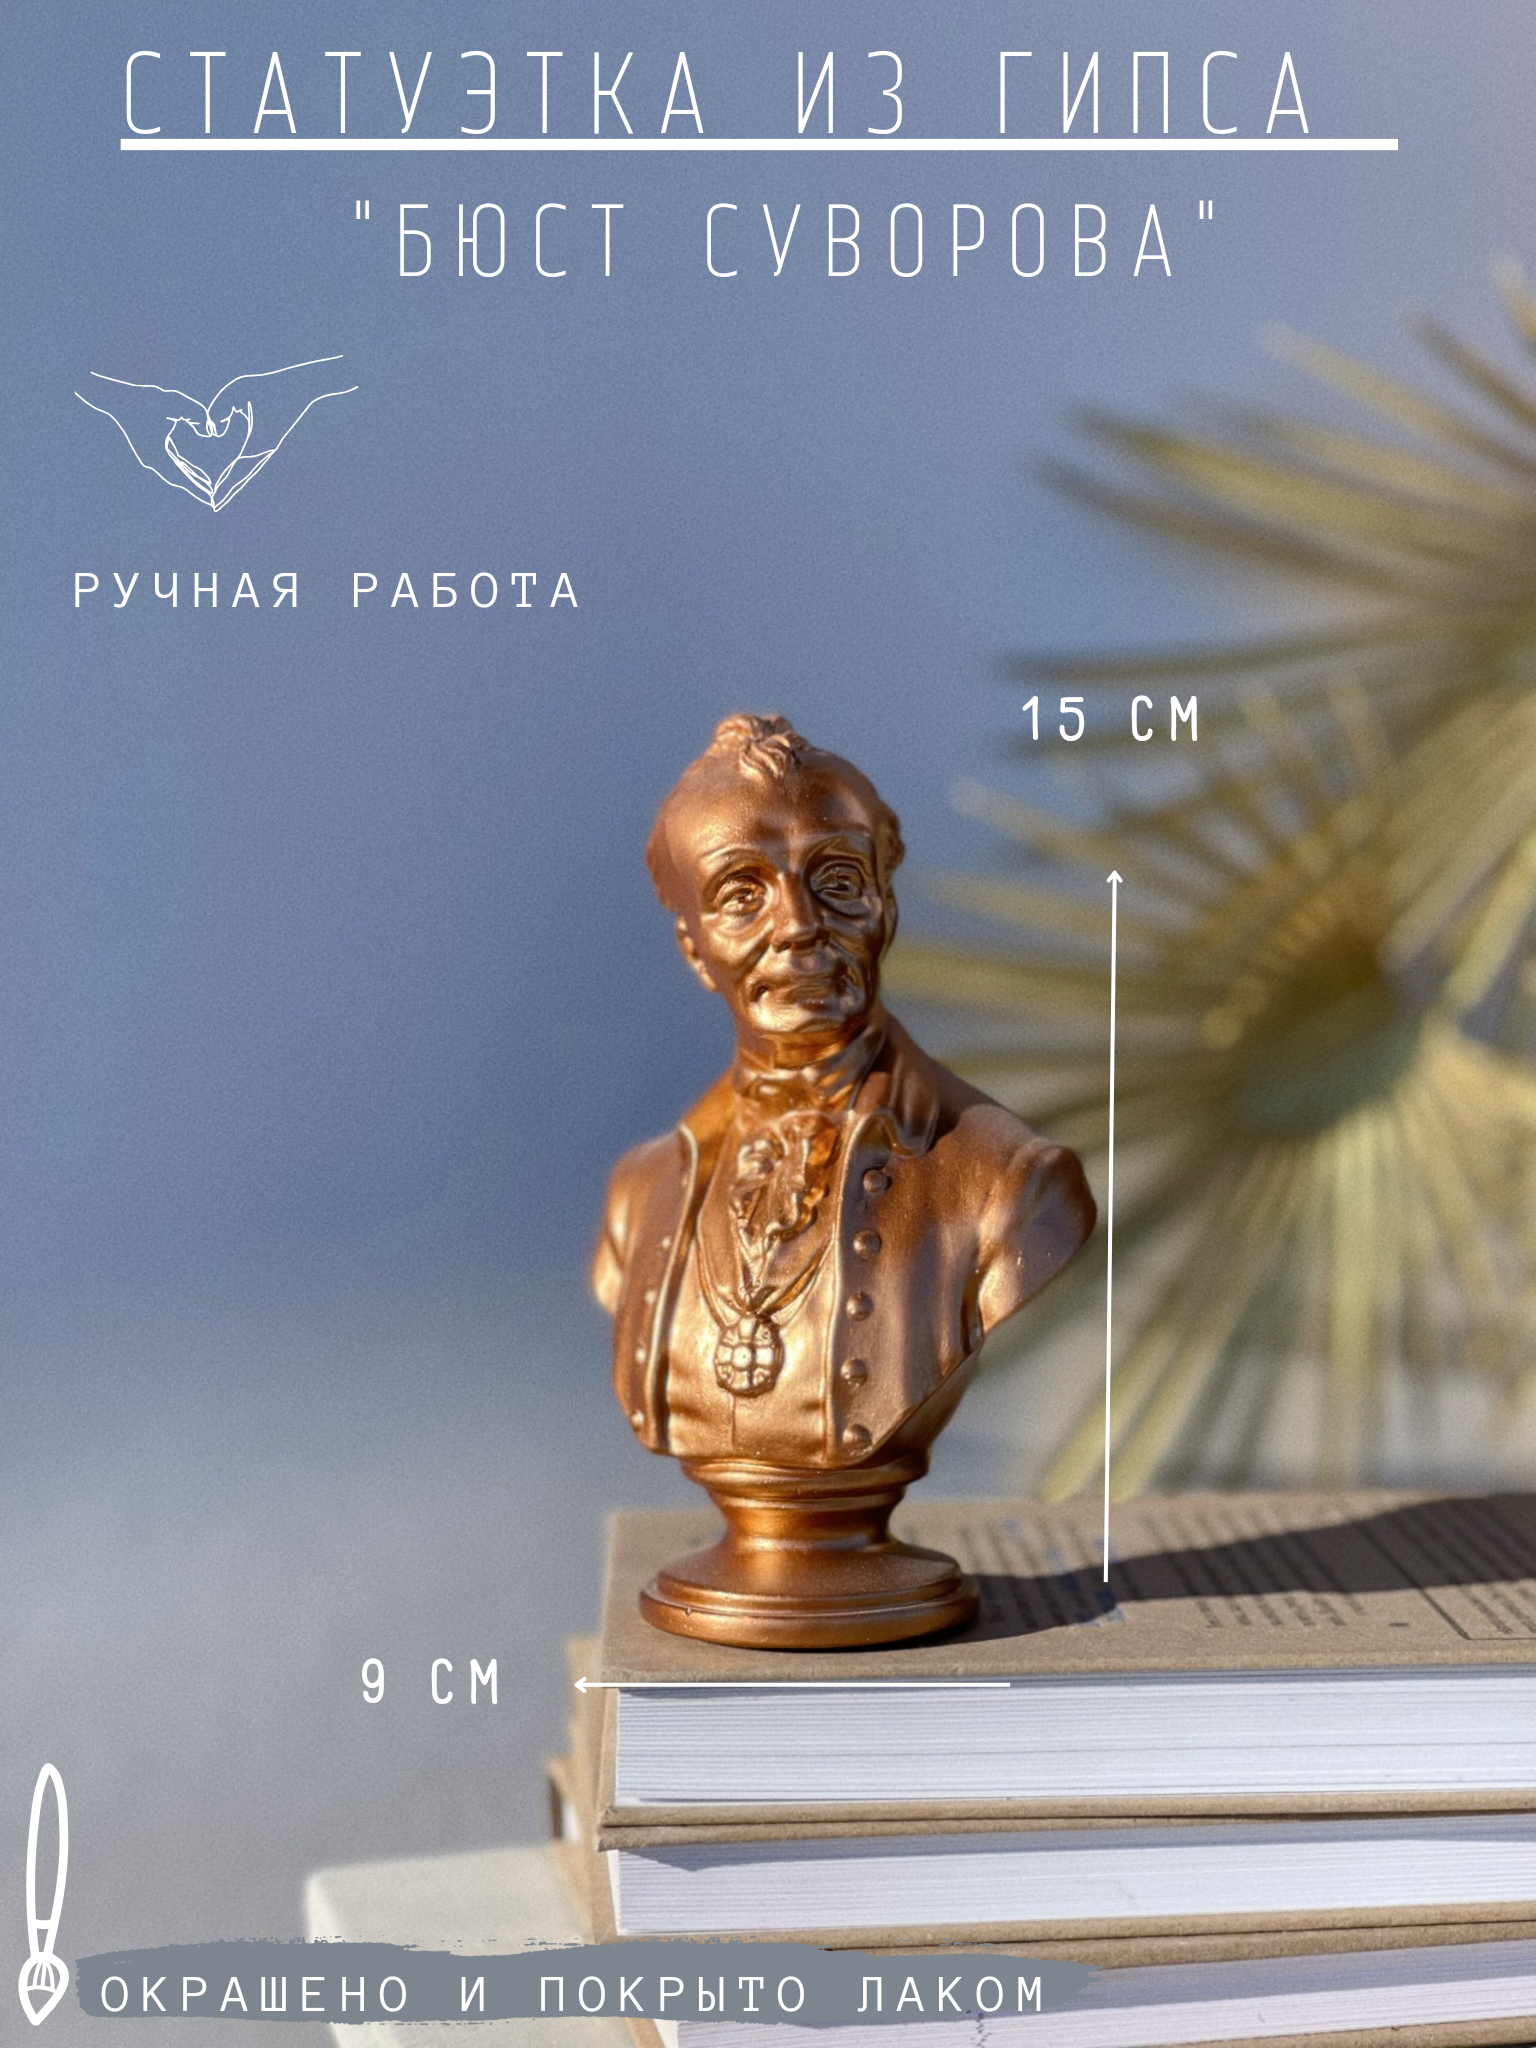 Статуэтка Бюст Суворова в бронзовом цвете, гипс, 15 см фигурка